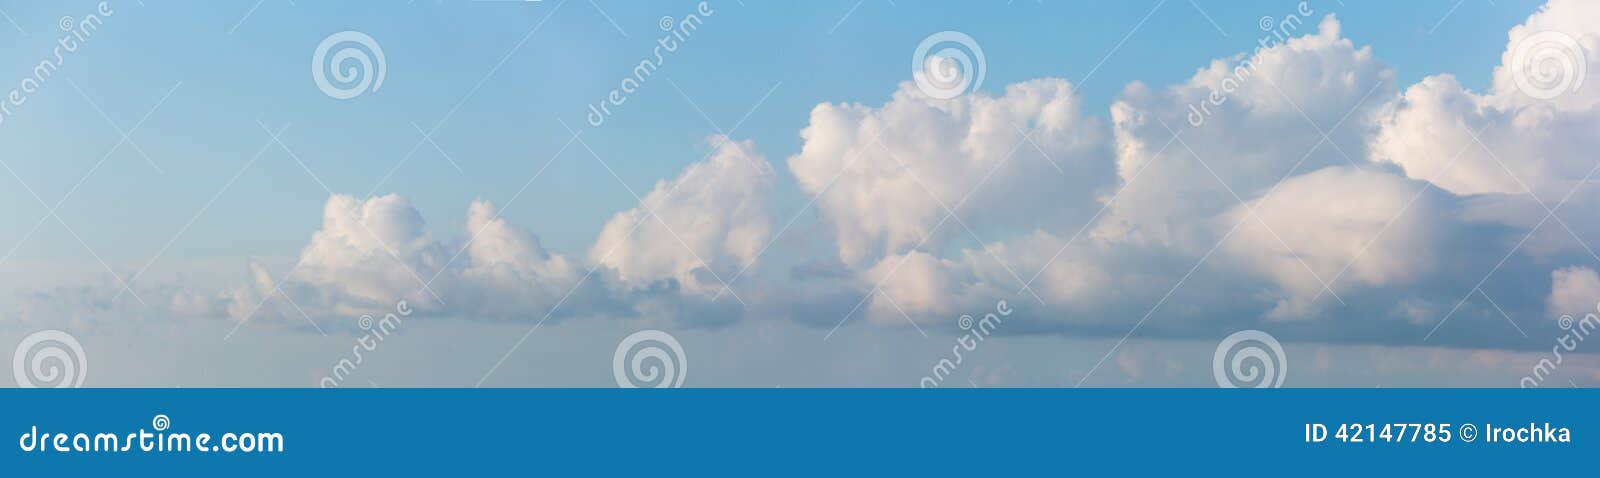 cloudscape horizontal banner